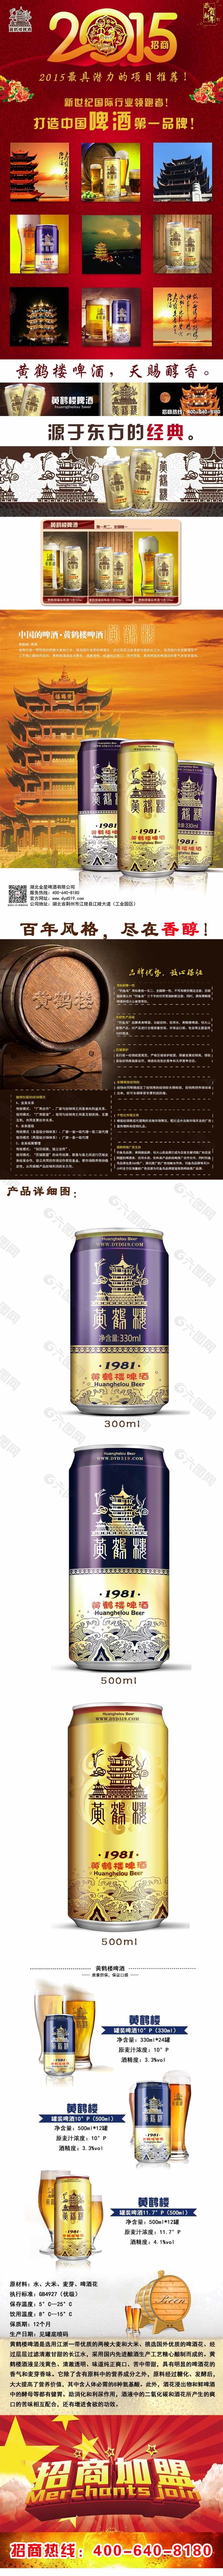 黄鹤啤酒招商网页